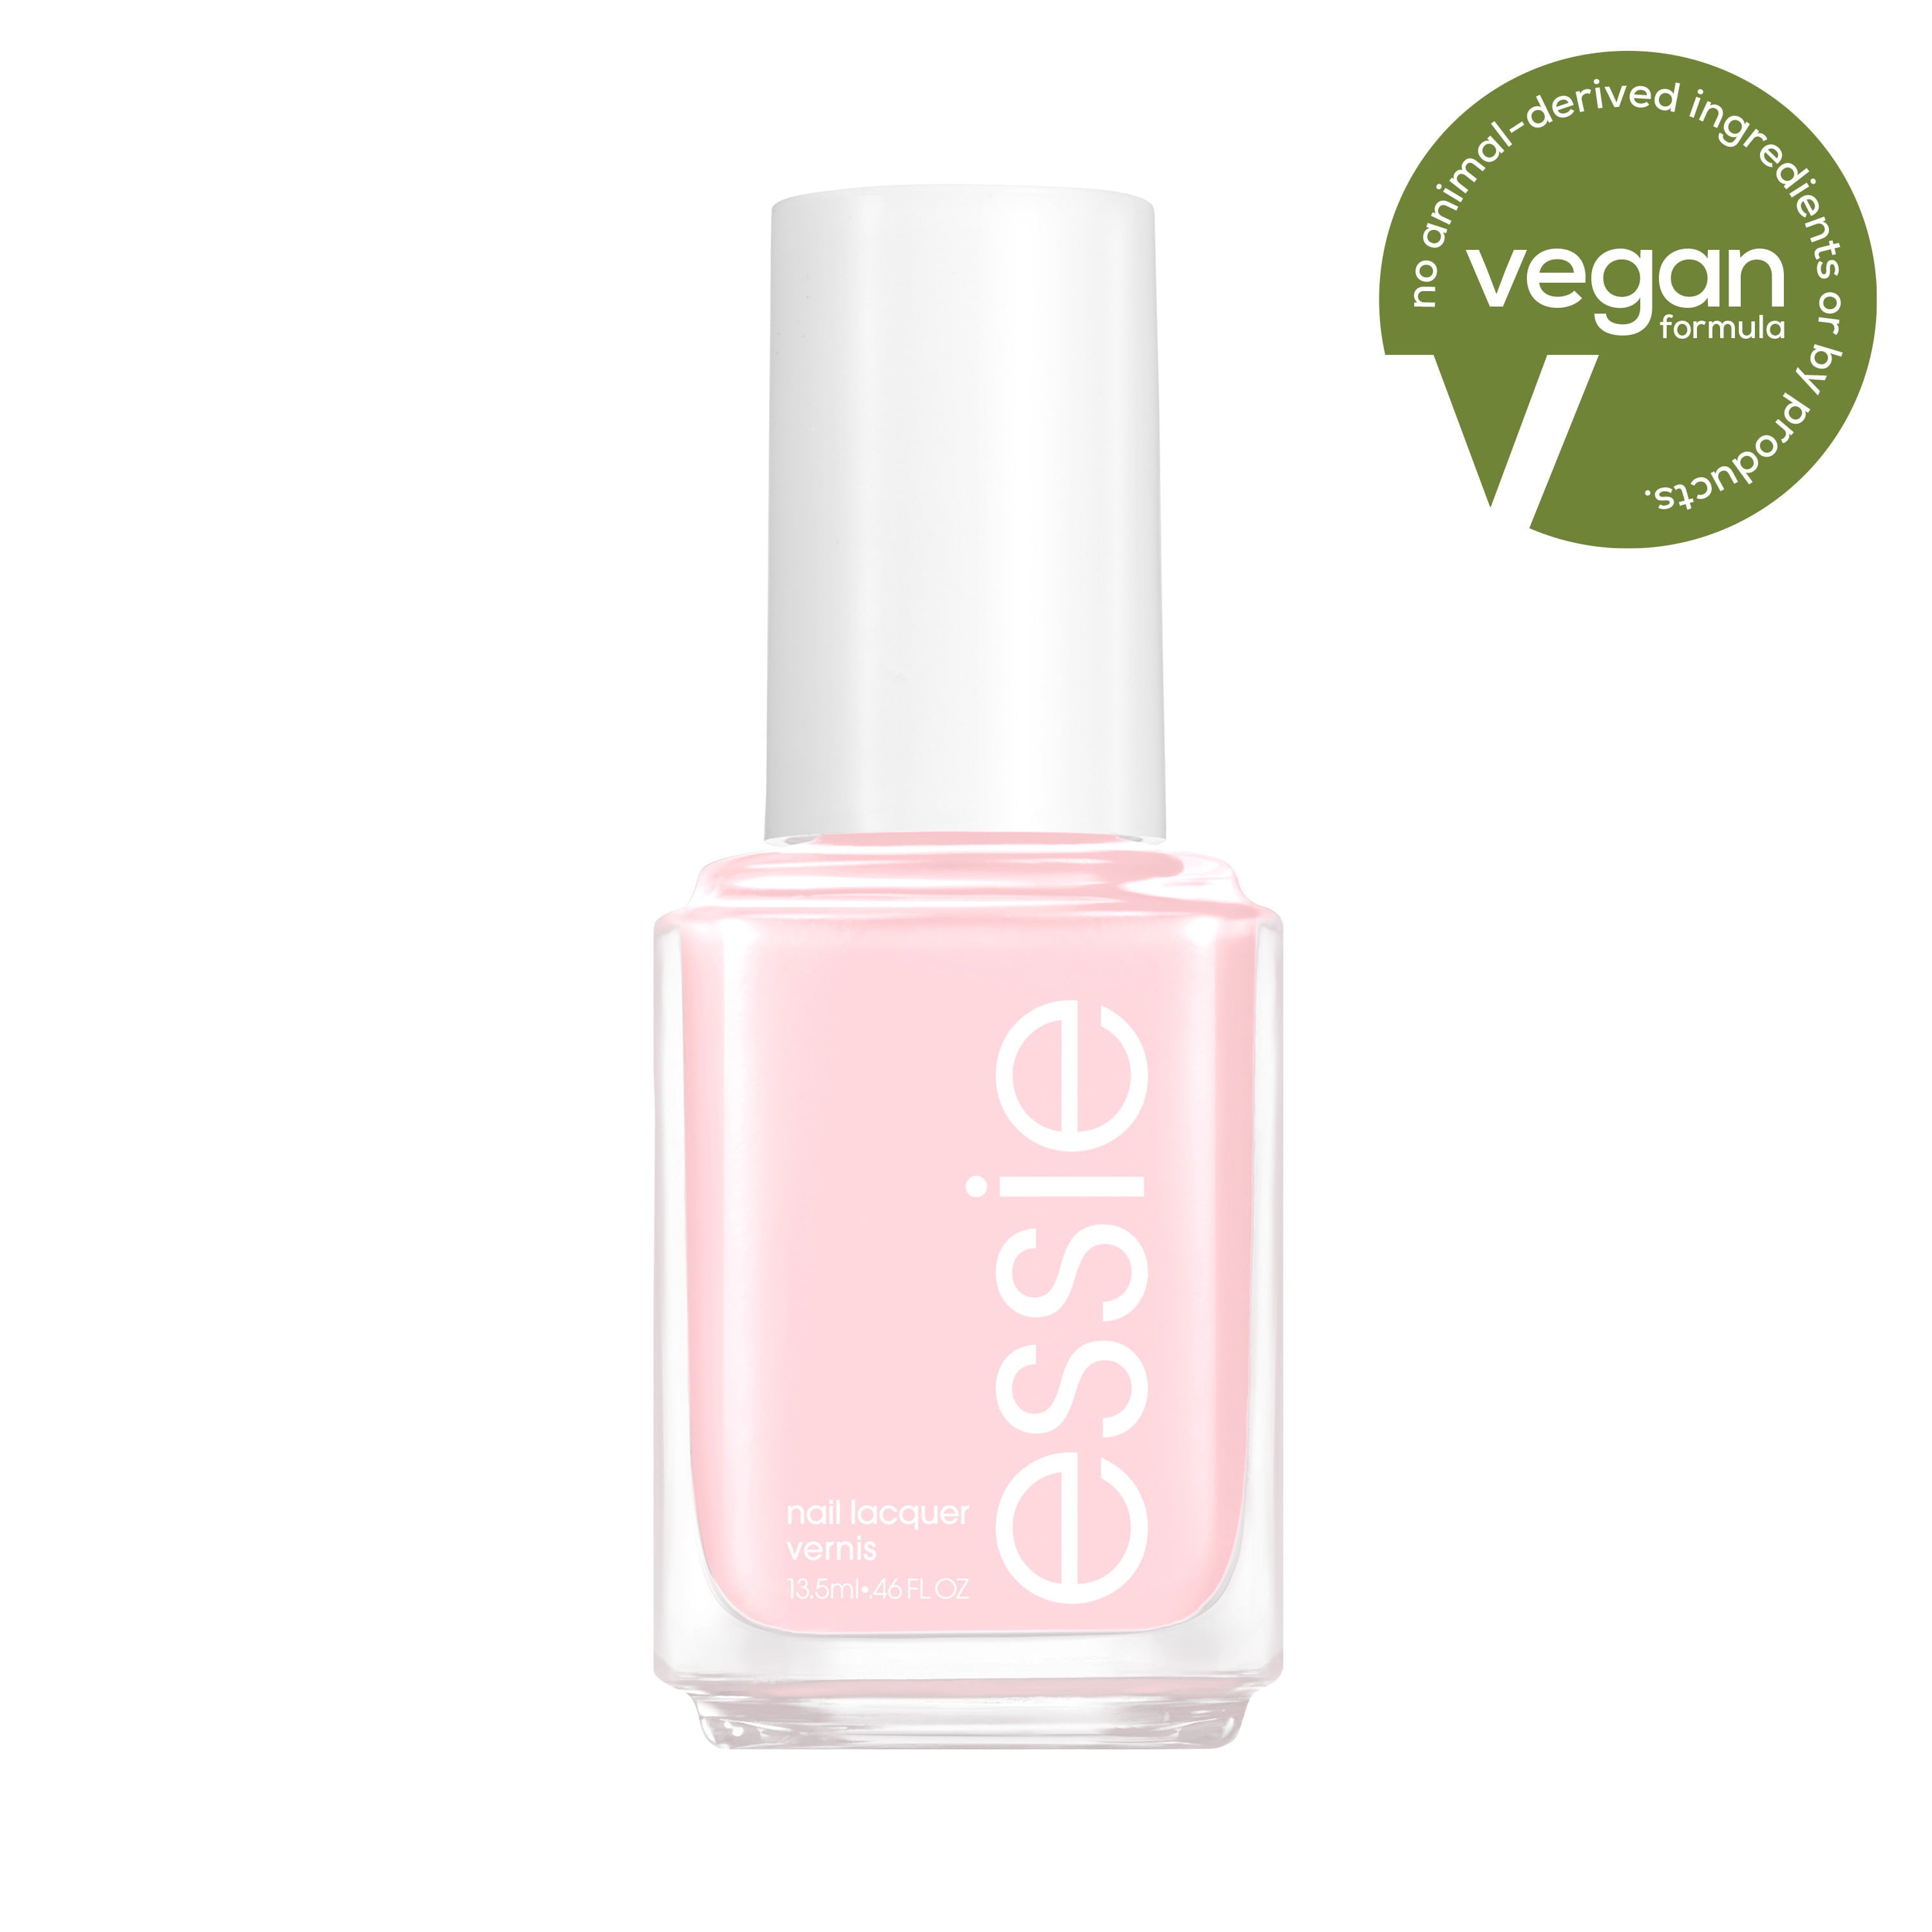 essie Salon Quality 8 Free Vegan Nail Polish, Pastel Pink, 0.46 fl oz  Bottle